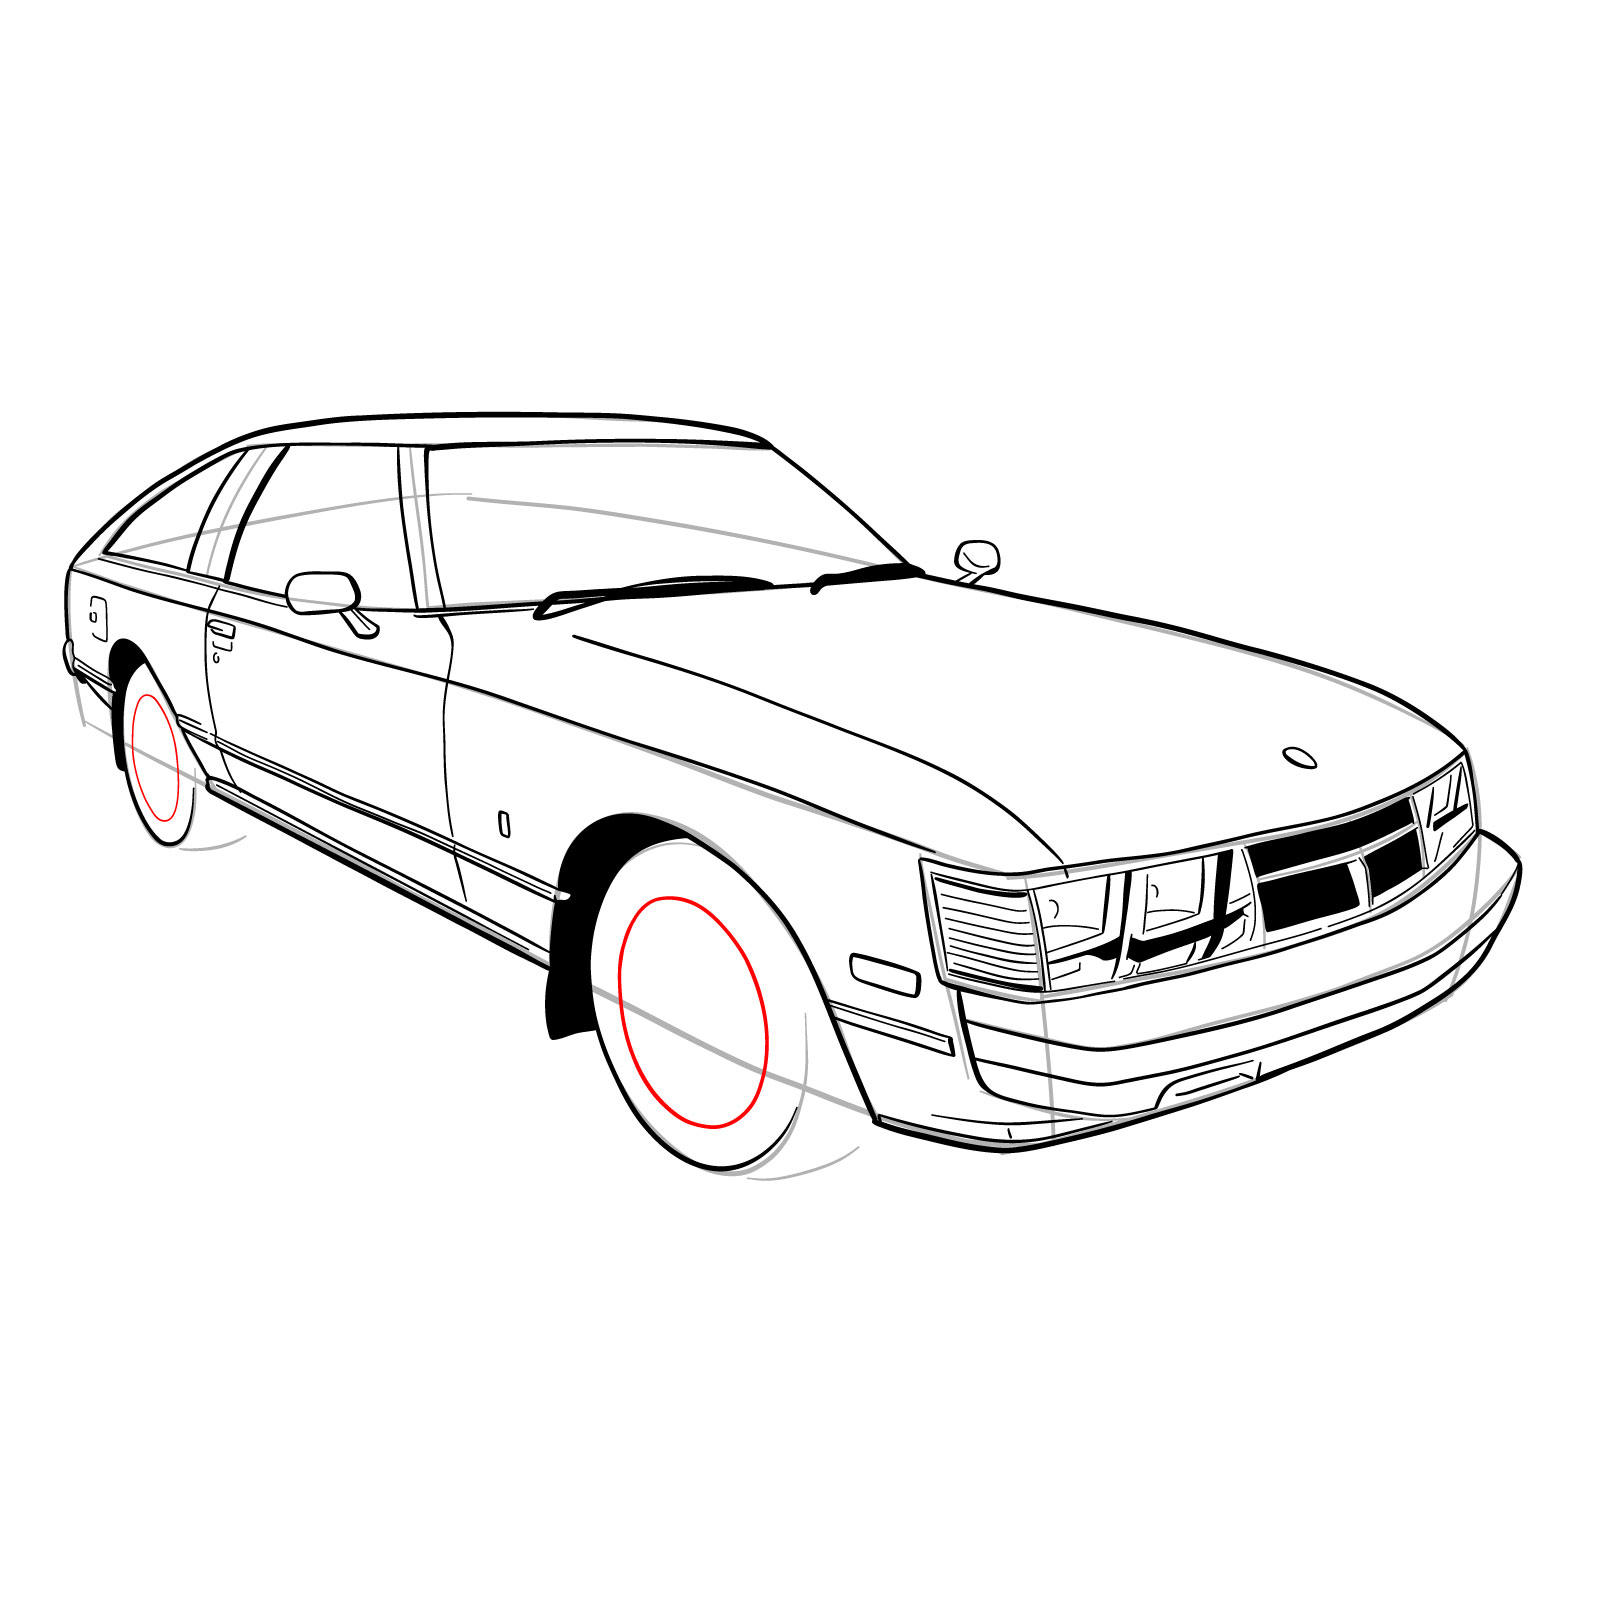 How to draw a 1979 Toyota Celica Supra Mk I Coupe - step 27